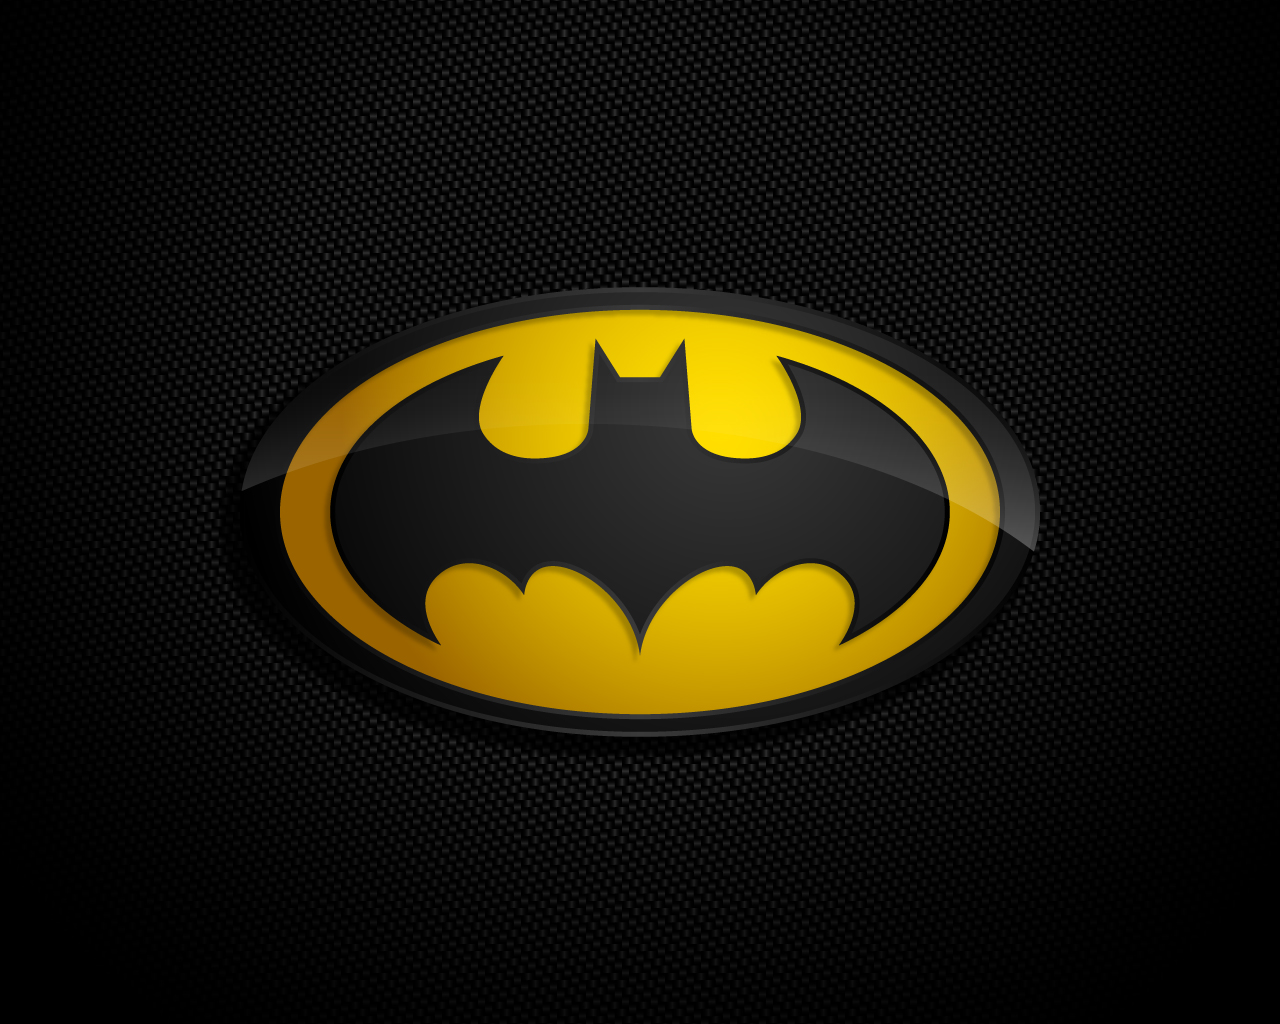 Batman achtergronden hd batman wallpapers afbeelding 28jpg 1280x1024